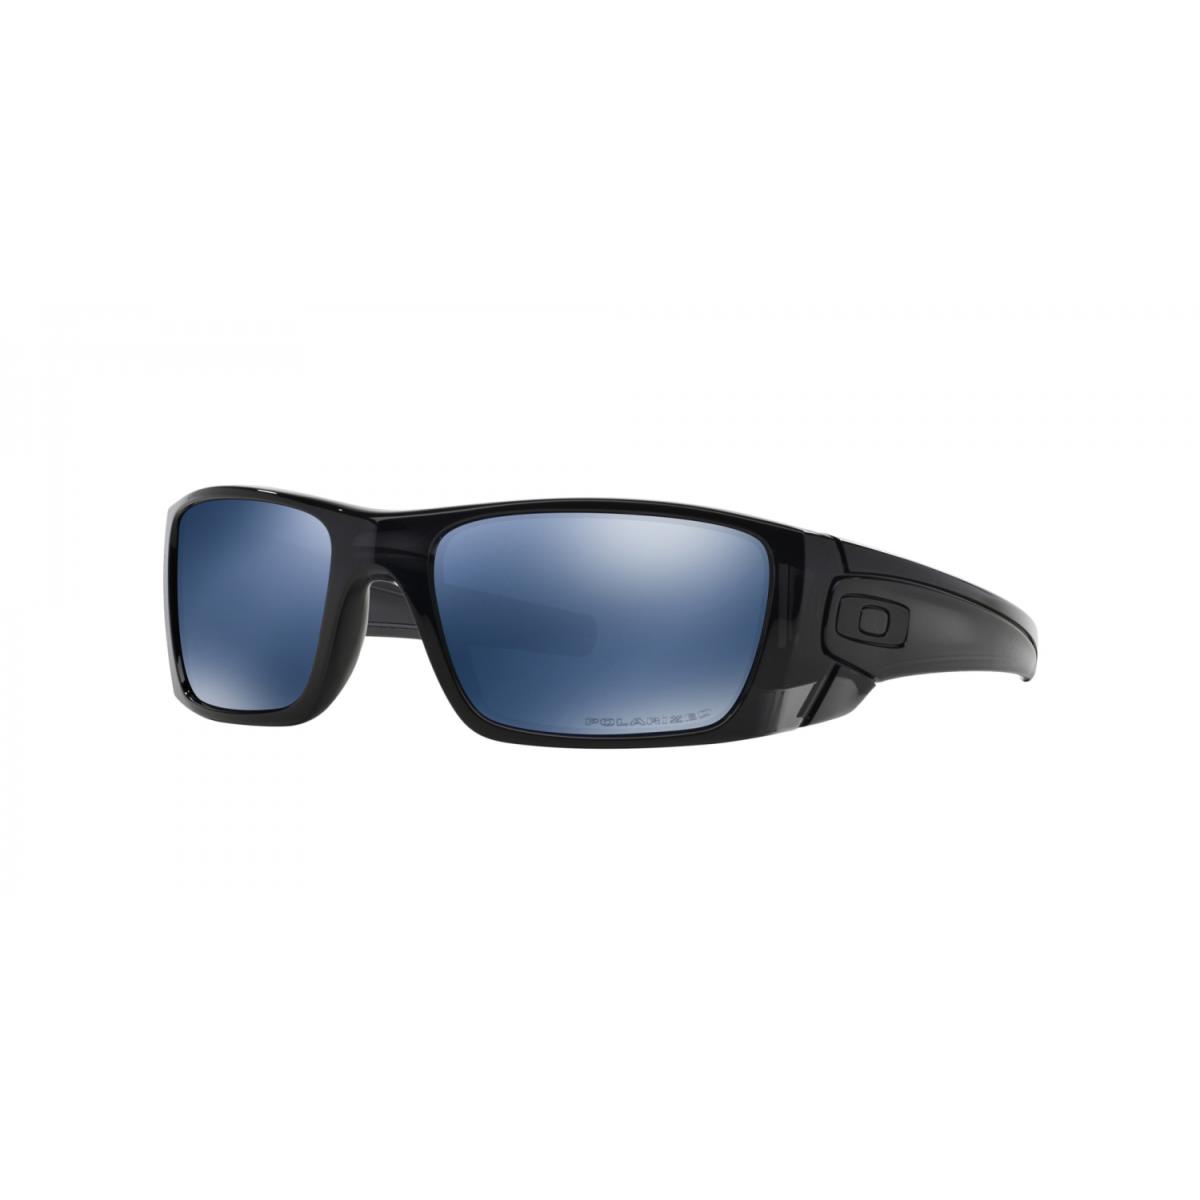 Oakley Fuel Cell Polarized Sunglasses OO9096-84 Black Ink Frame W/ Ice Iridium - Frame: Polished Black Ink, Lens: ICE IRIDIUM POLARIZED